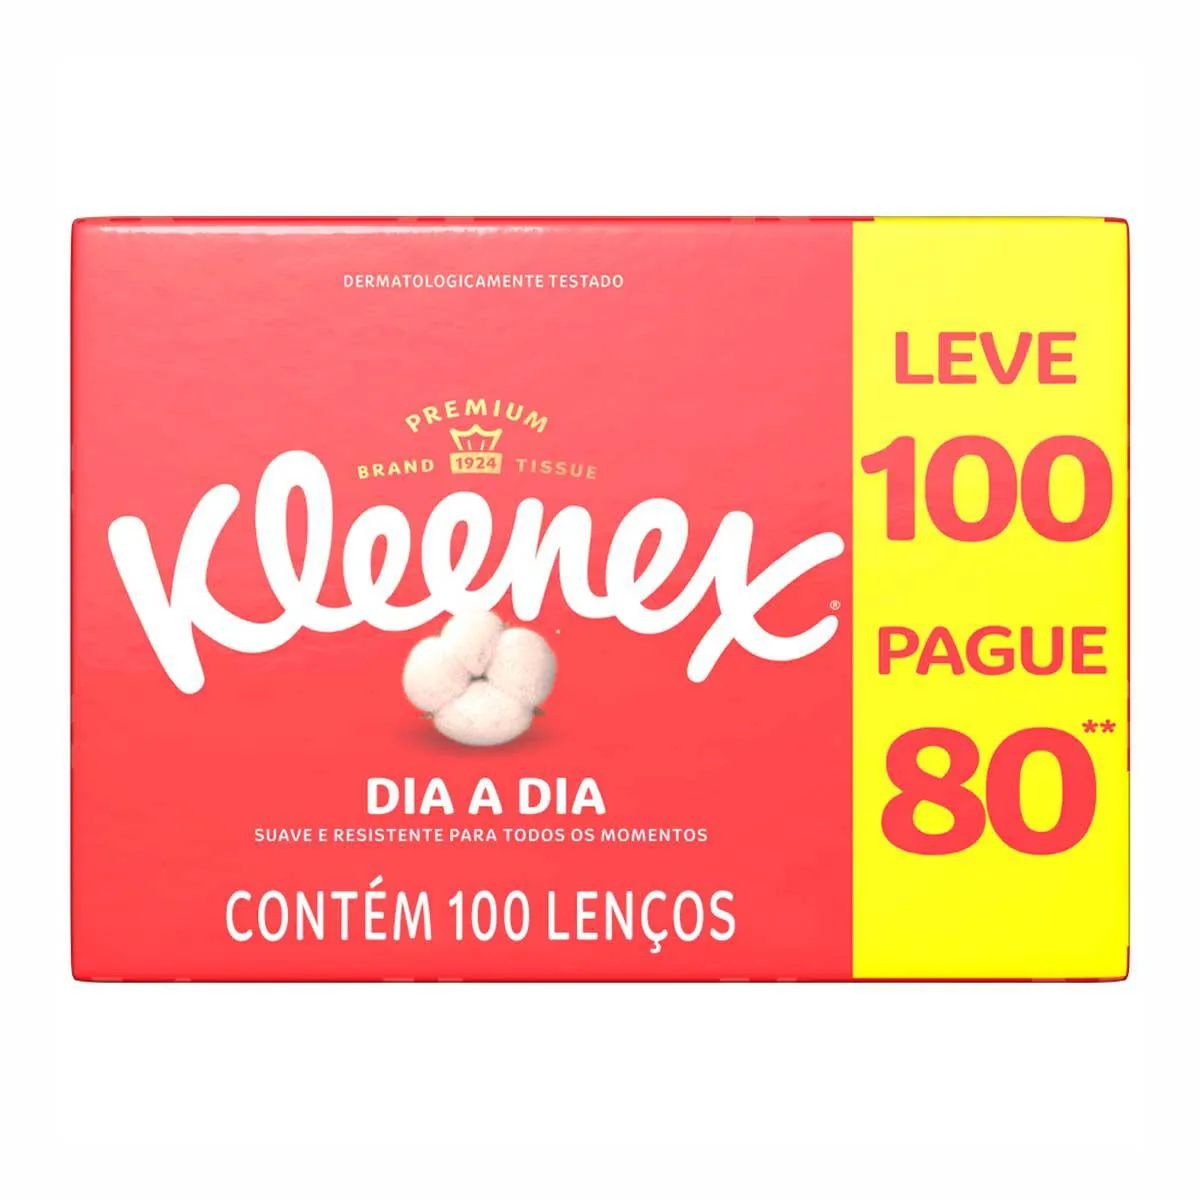 Lenços Kleenex Box Leve 100 Pague 80